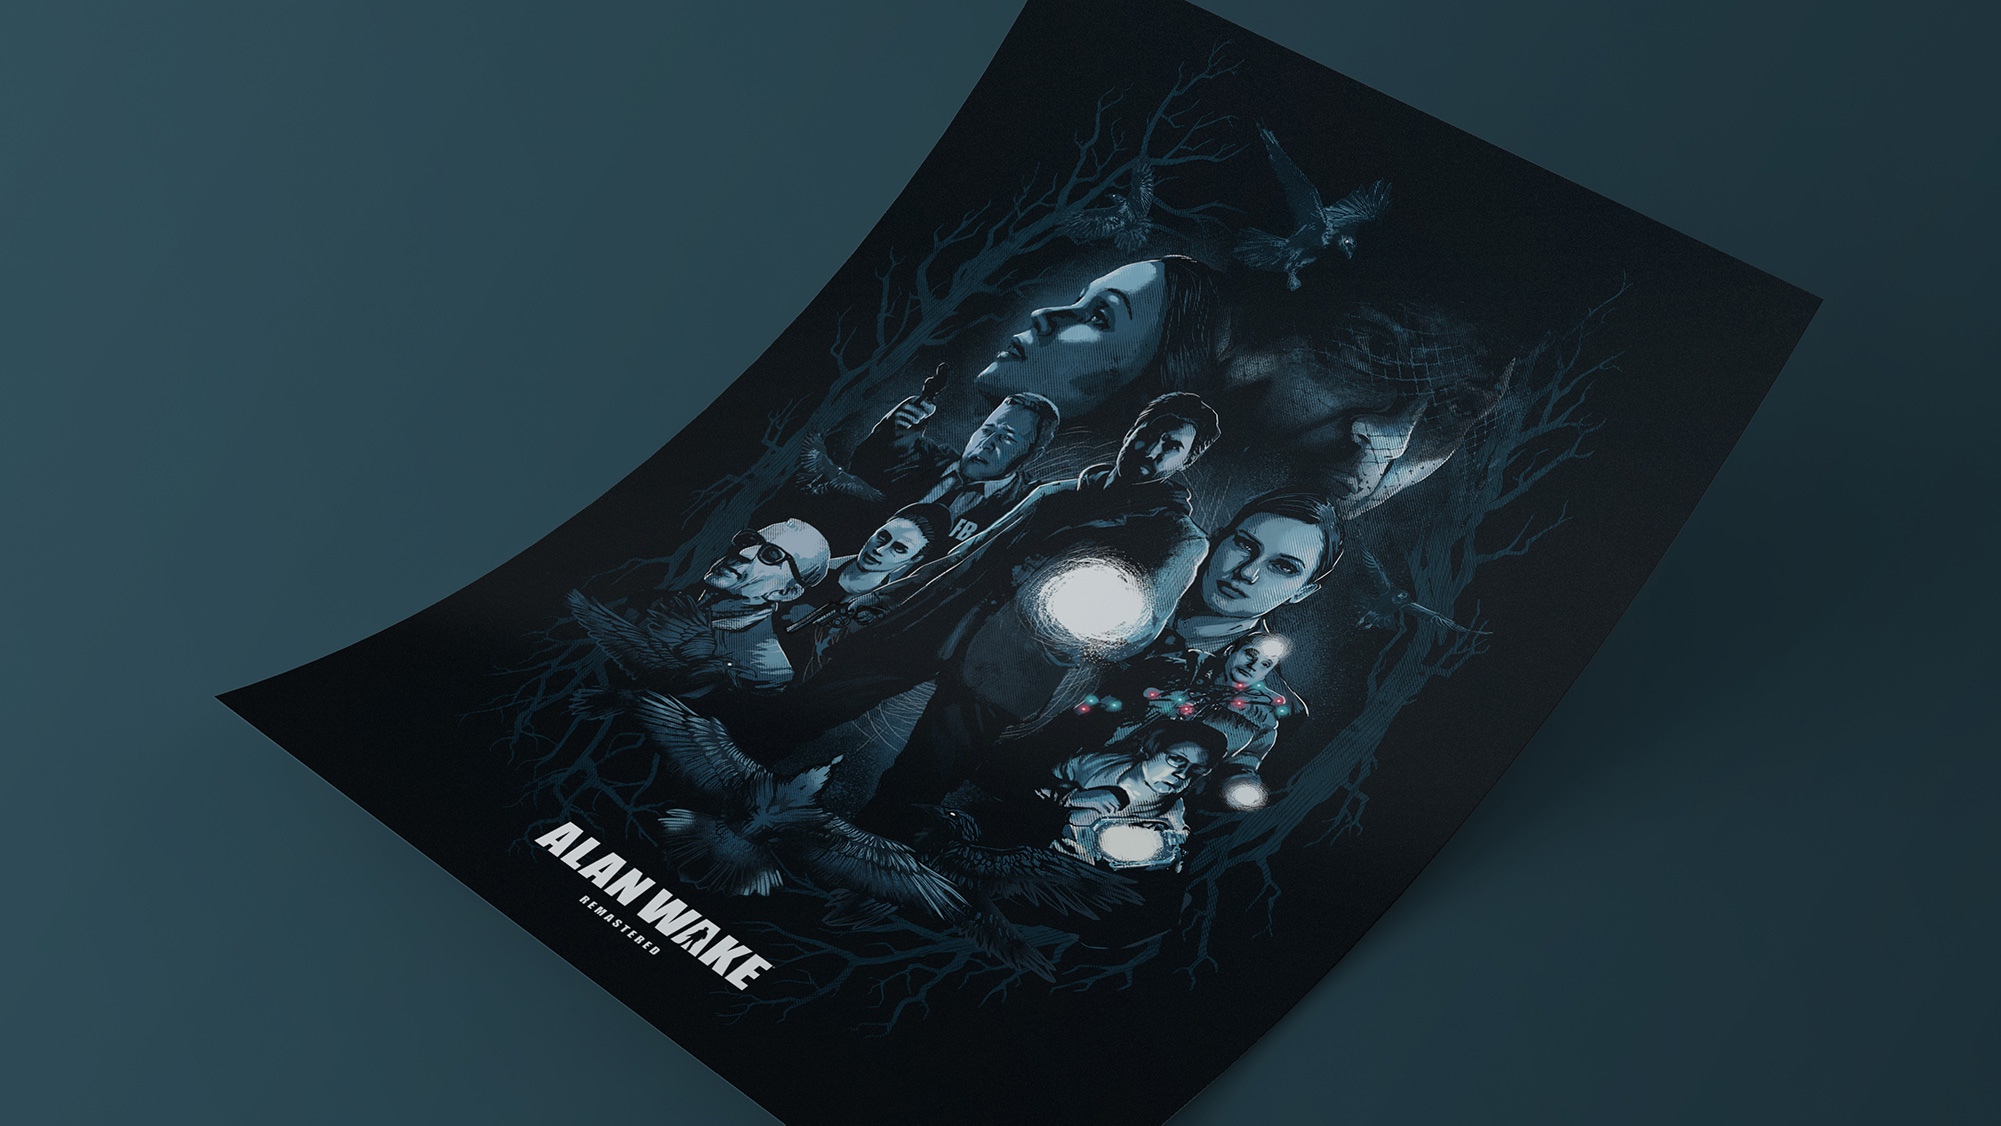 Announcing Alan Wake Remastered — Alan Wake